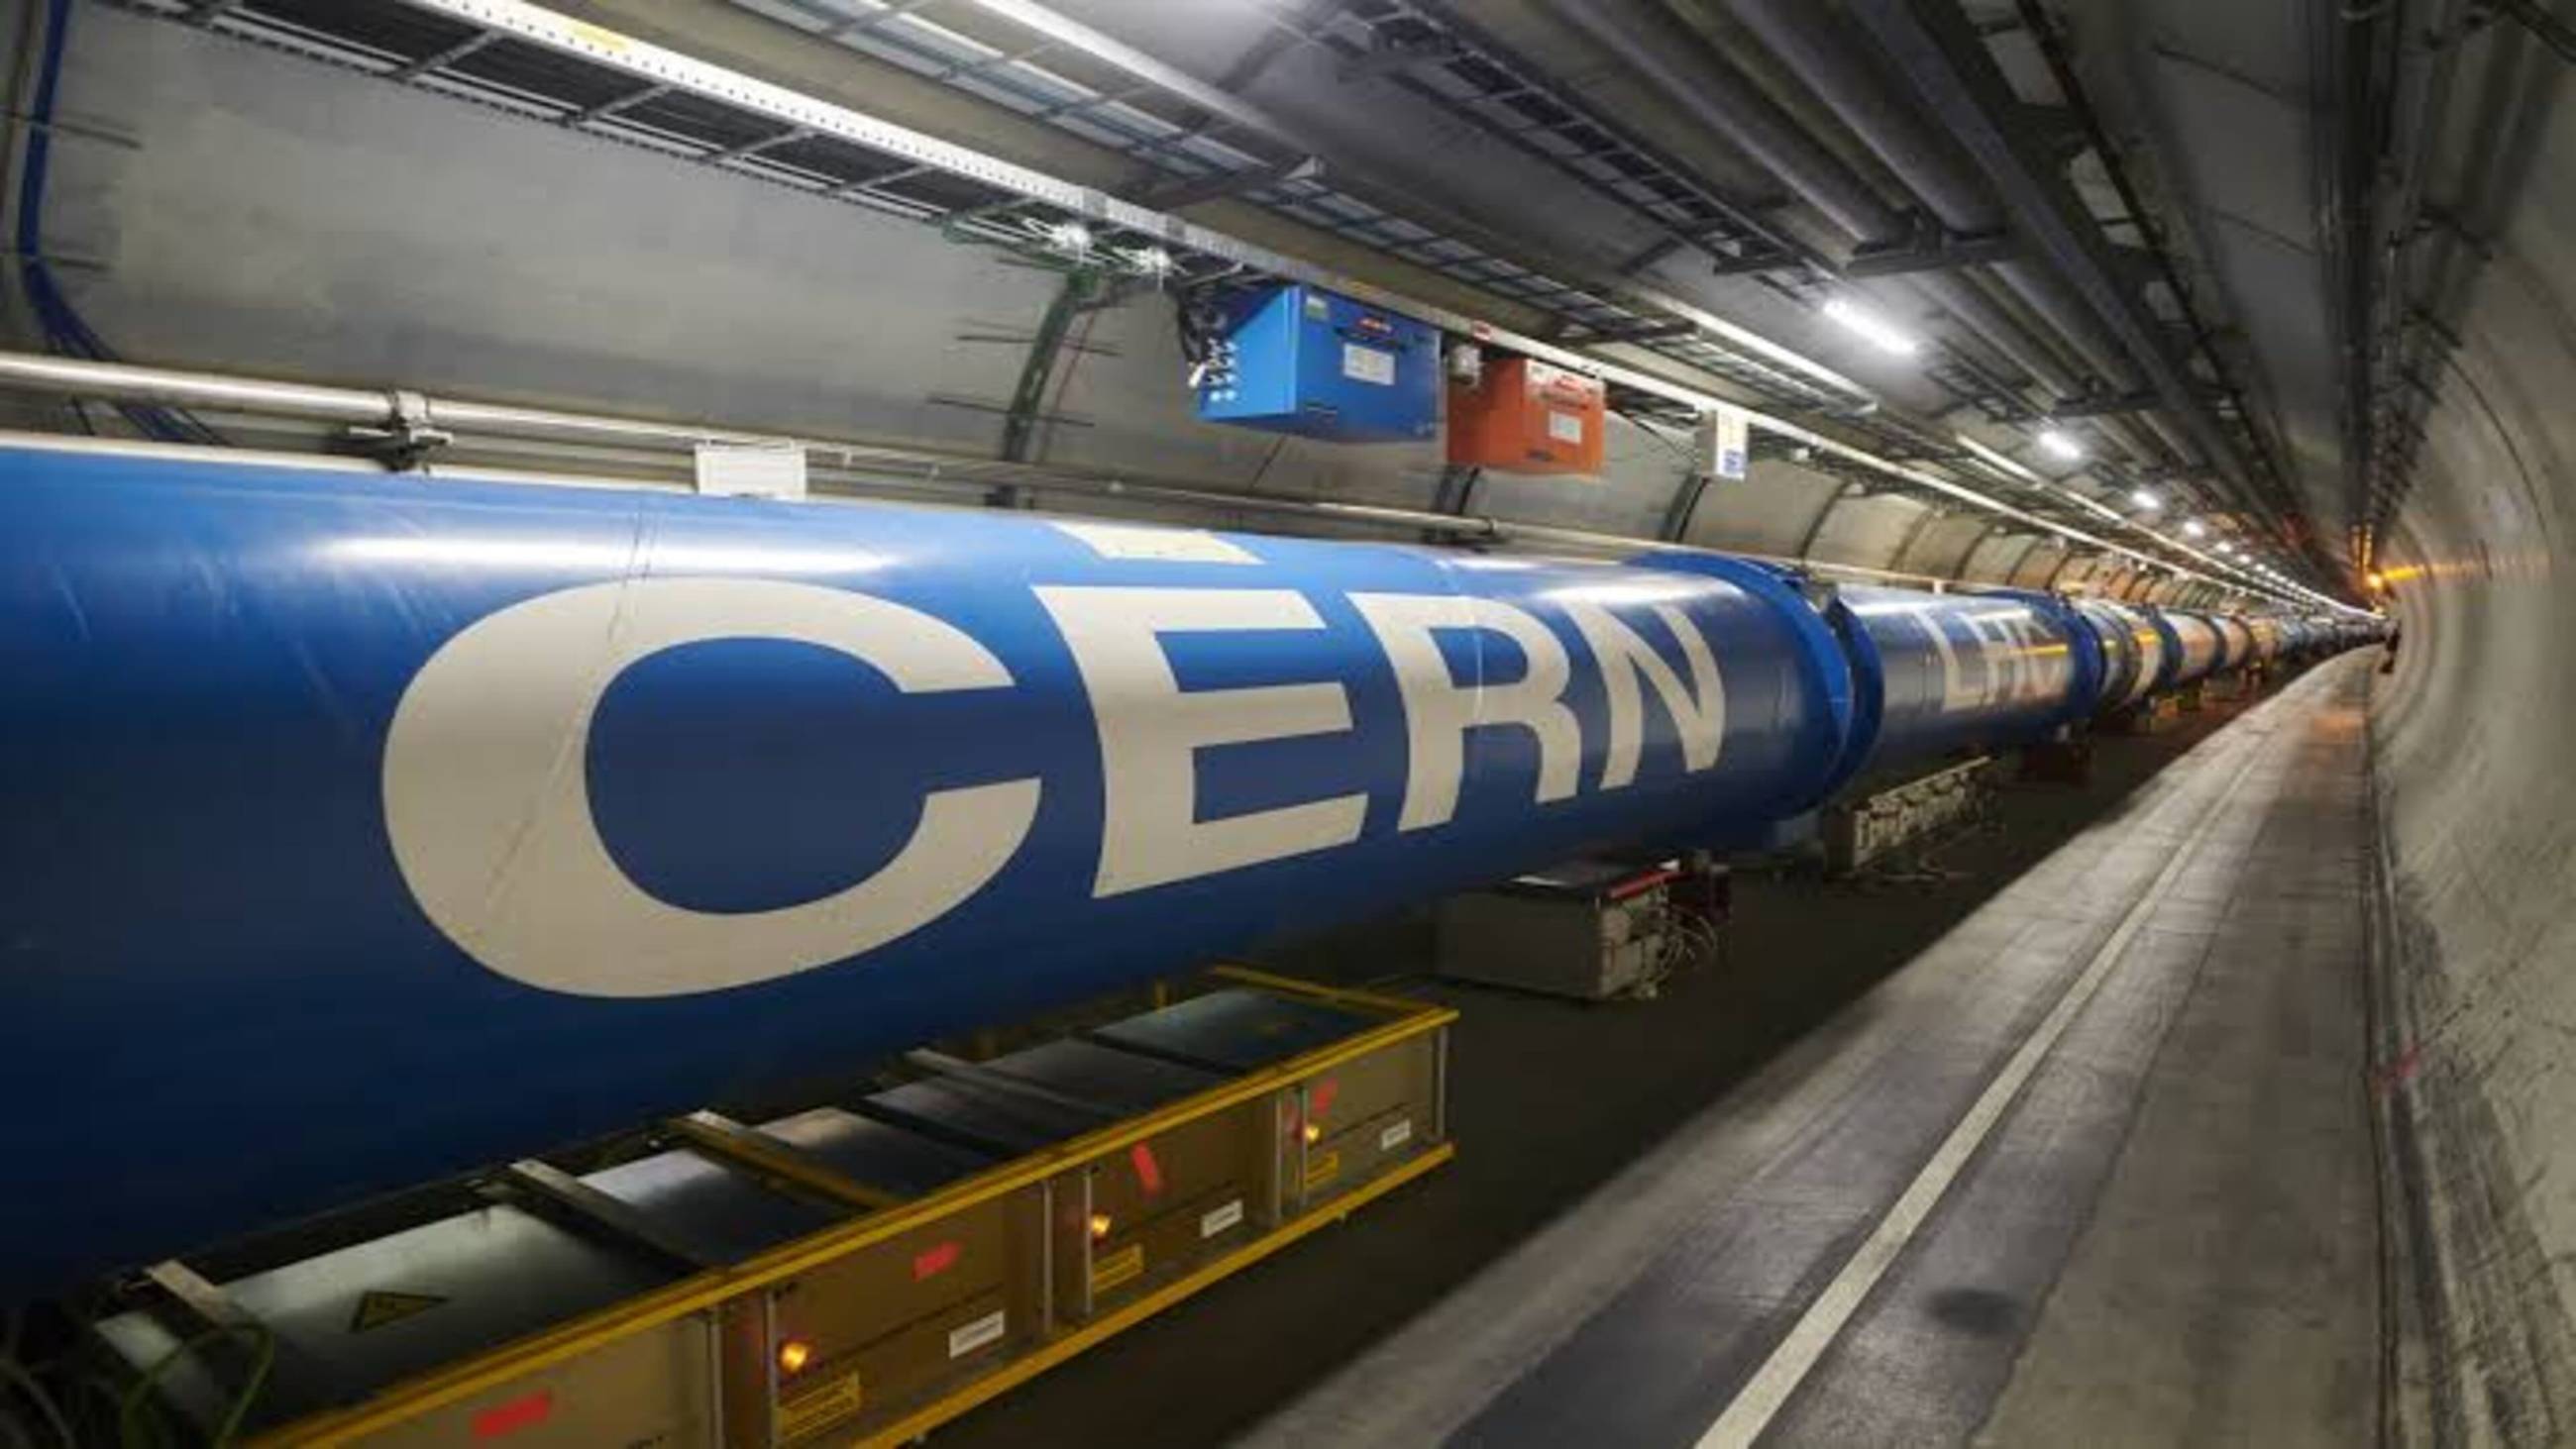 Cubierta de CERN